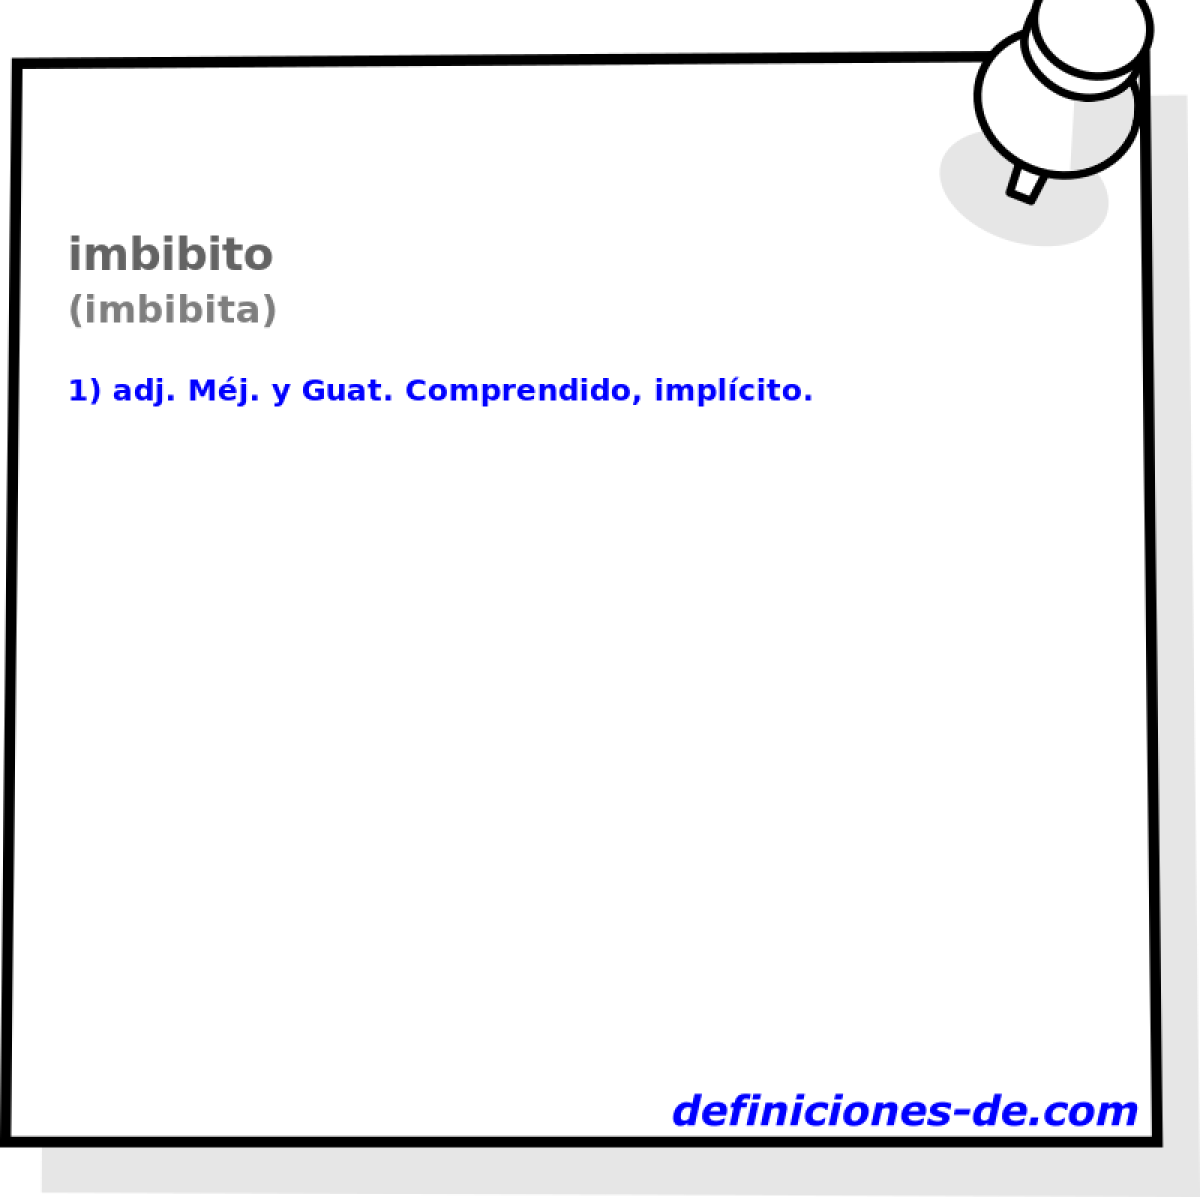 imbibito (imbibita)